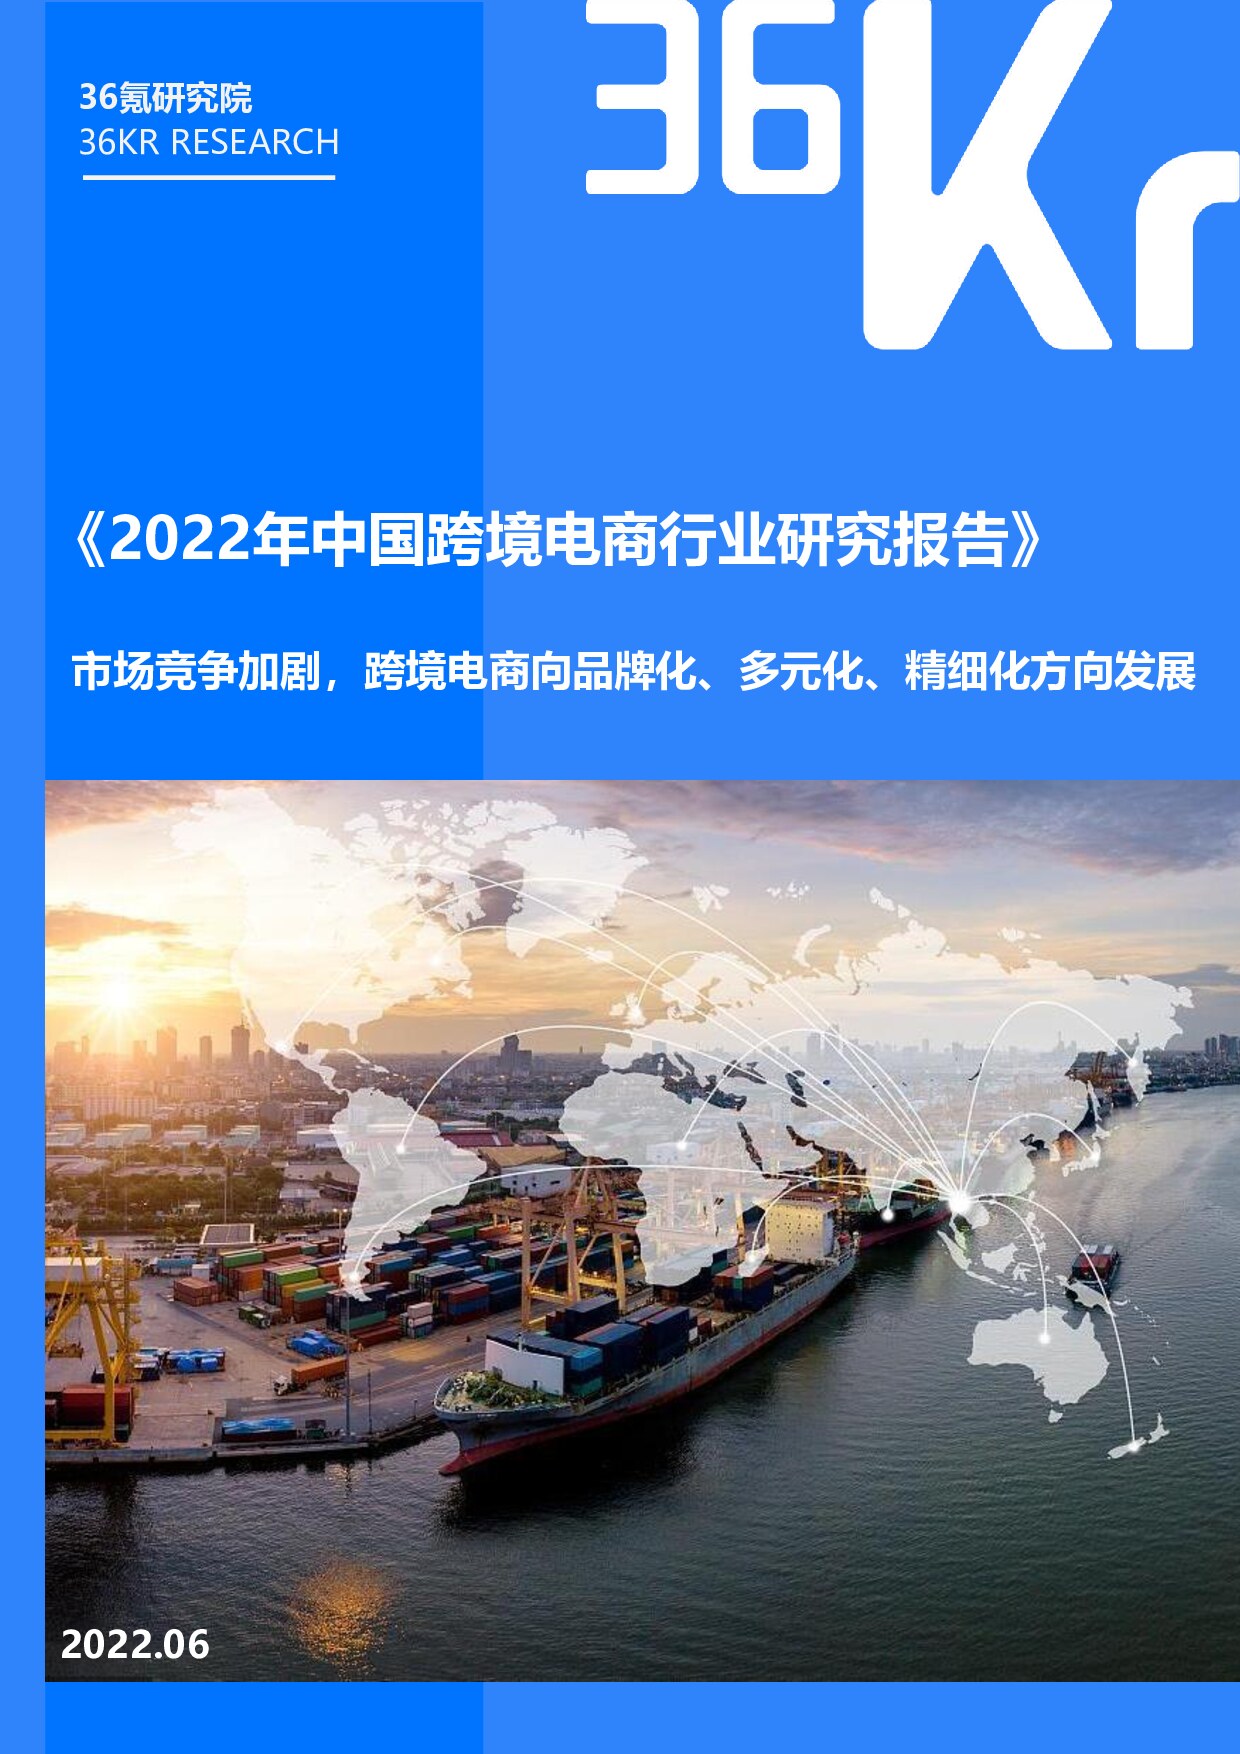 36Kr-2022年中国跨境电商行业研究报告